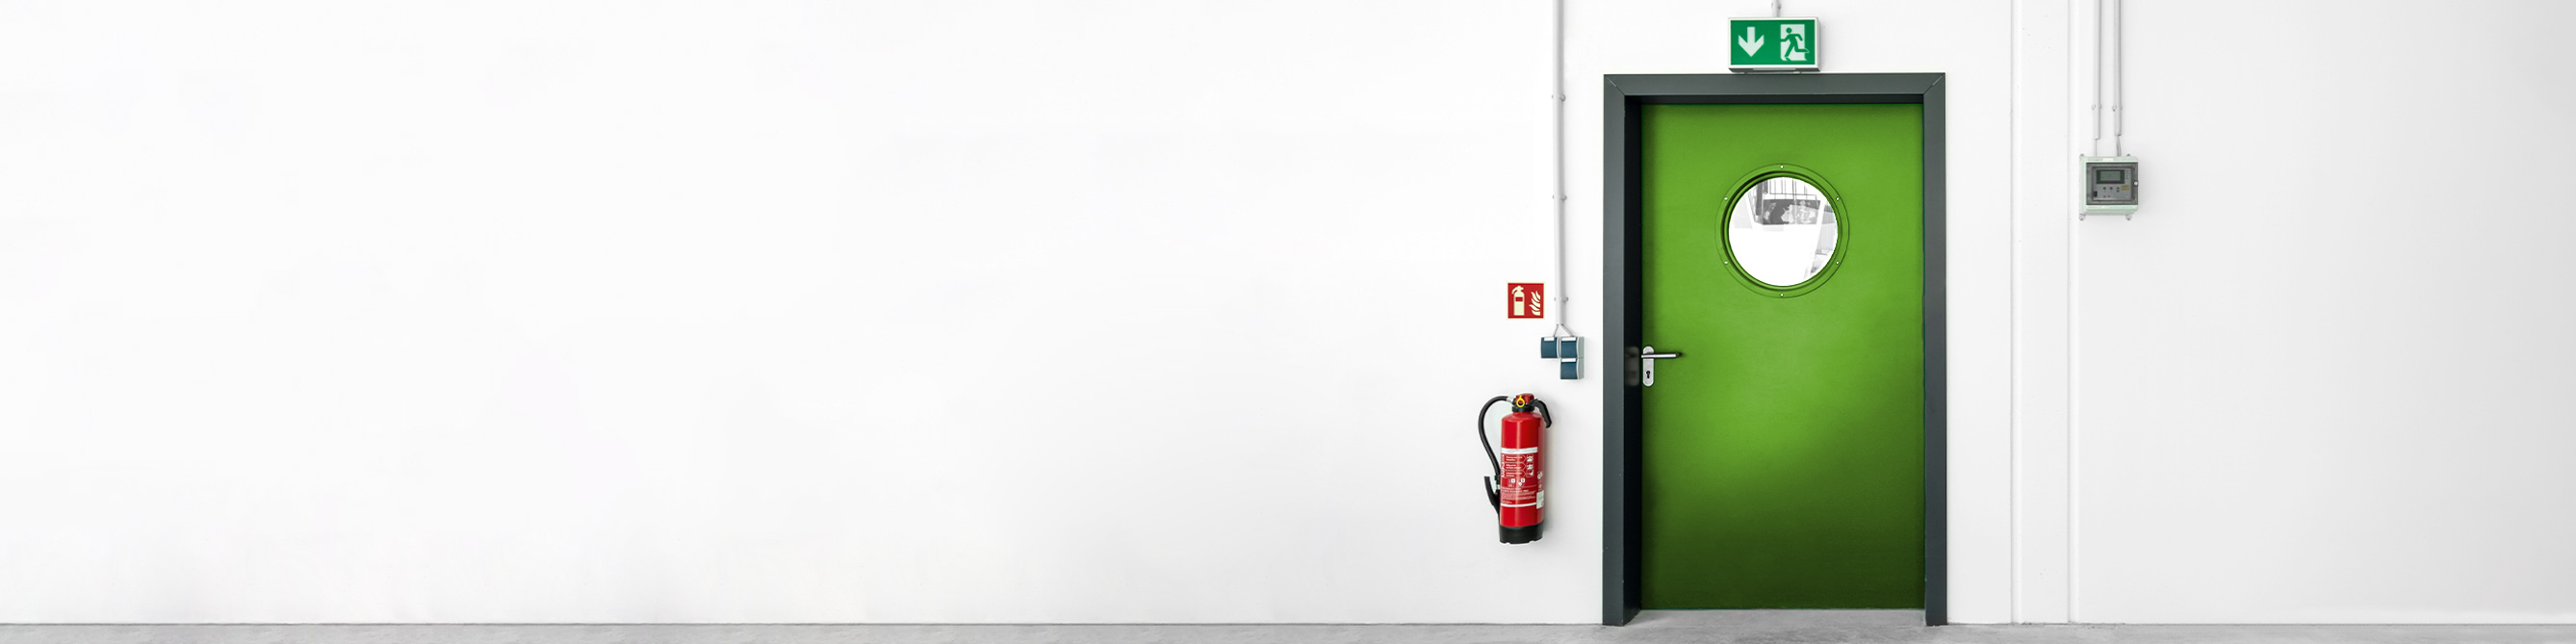 Das Bild zeigt einen an einer Wand befestigten Feuerlöscher neben einer Tür